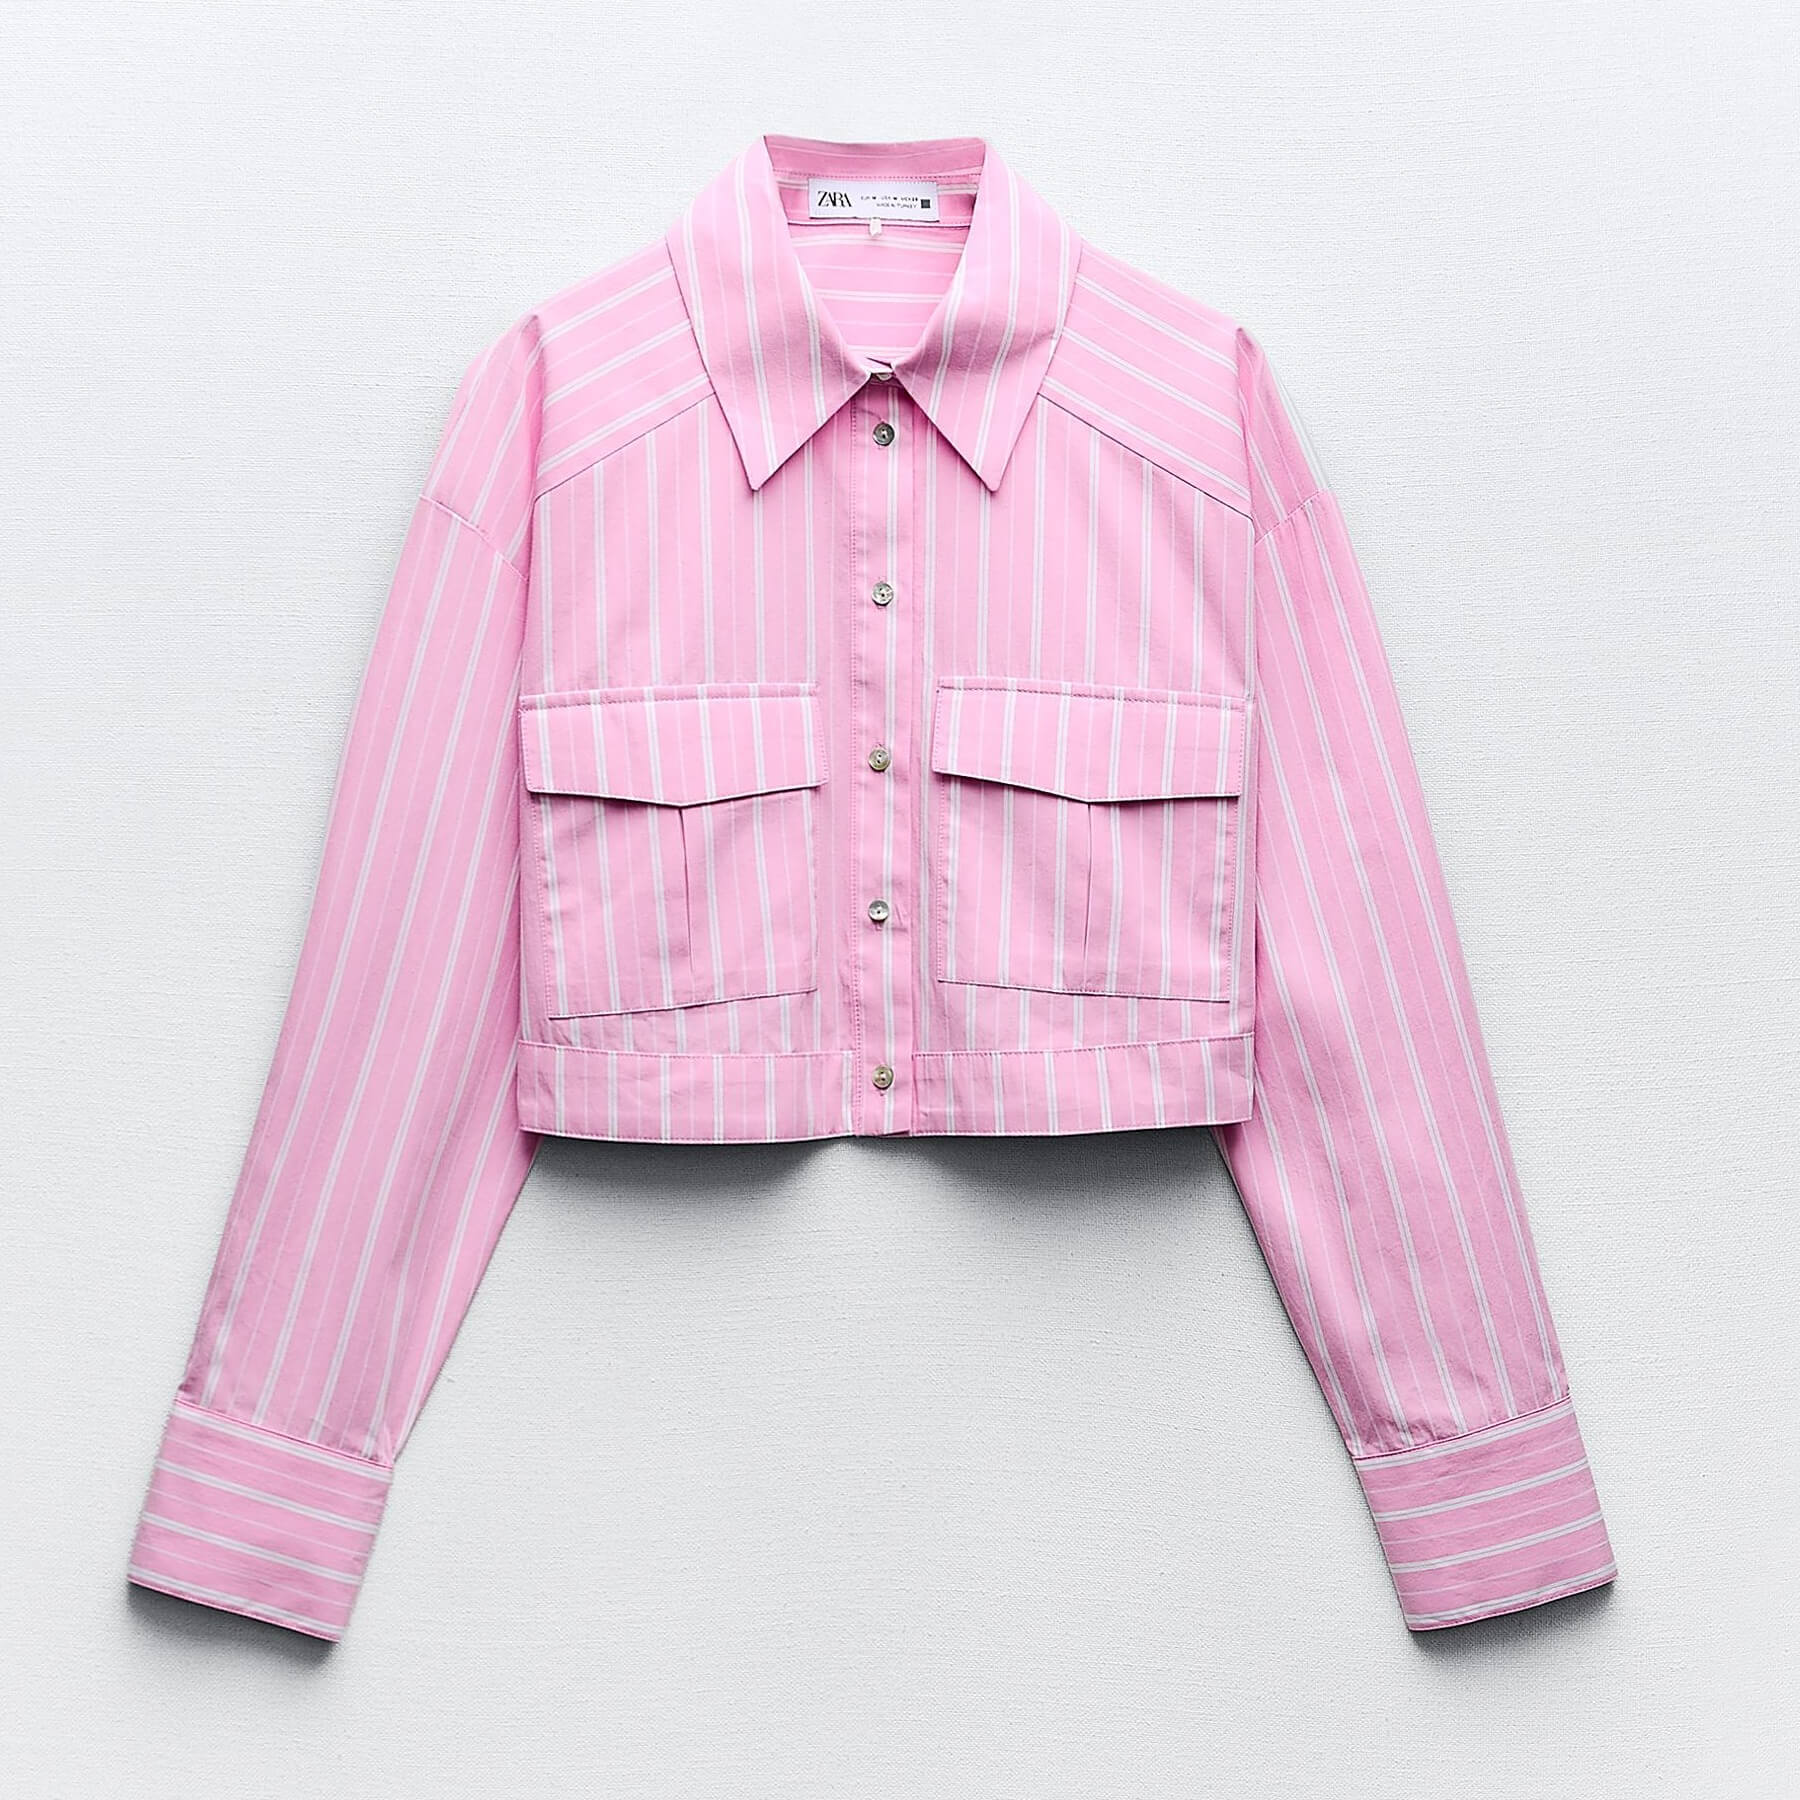 рубашка zara cropped striped розовый Рубашка Zara Cropped Striped, розовый/белый